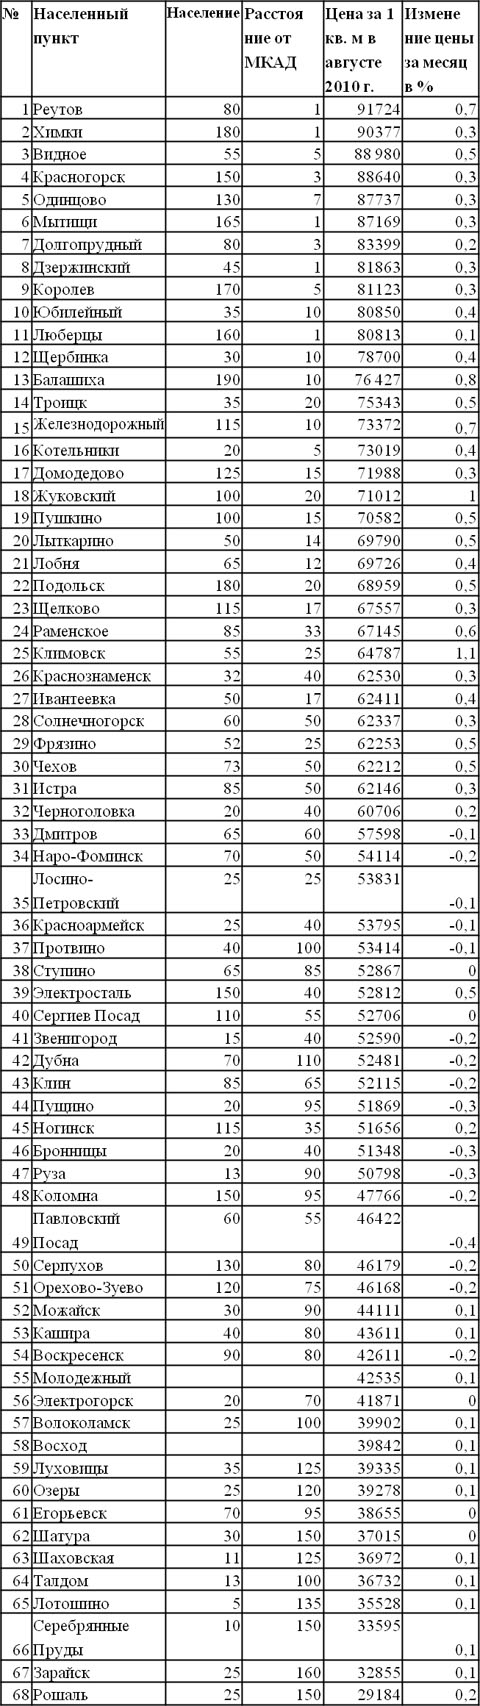 Цены за 1 кв. м в городах Подмосковья по состоянию на август 2010 года